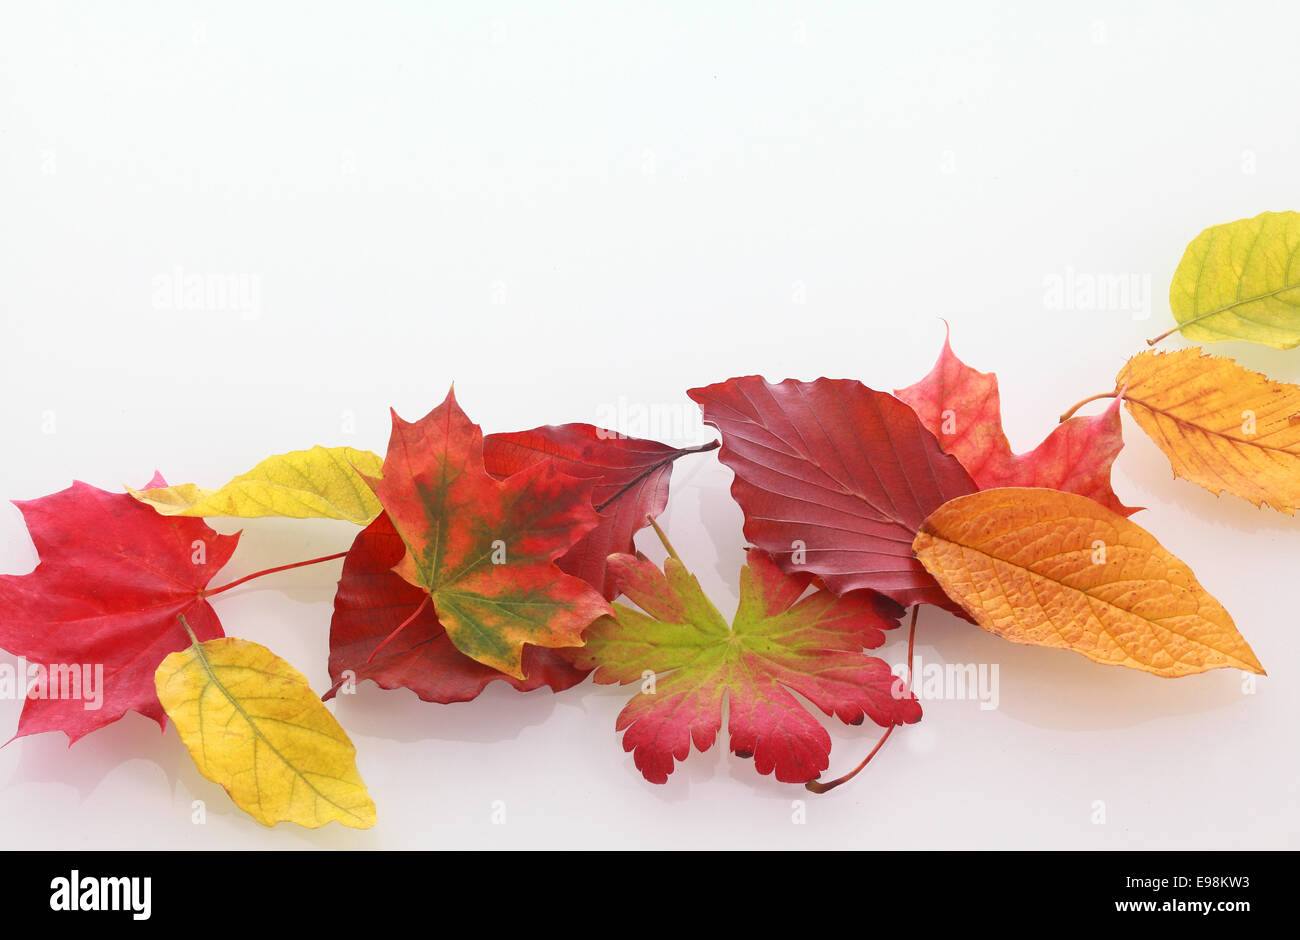 Varias hojas de otoño colorido de diferentes árboles en fila sobre fondo blanco. Foto de stock